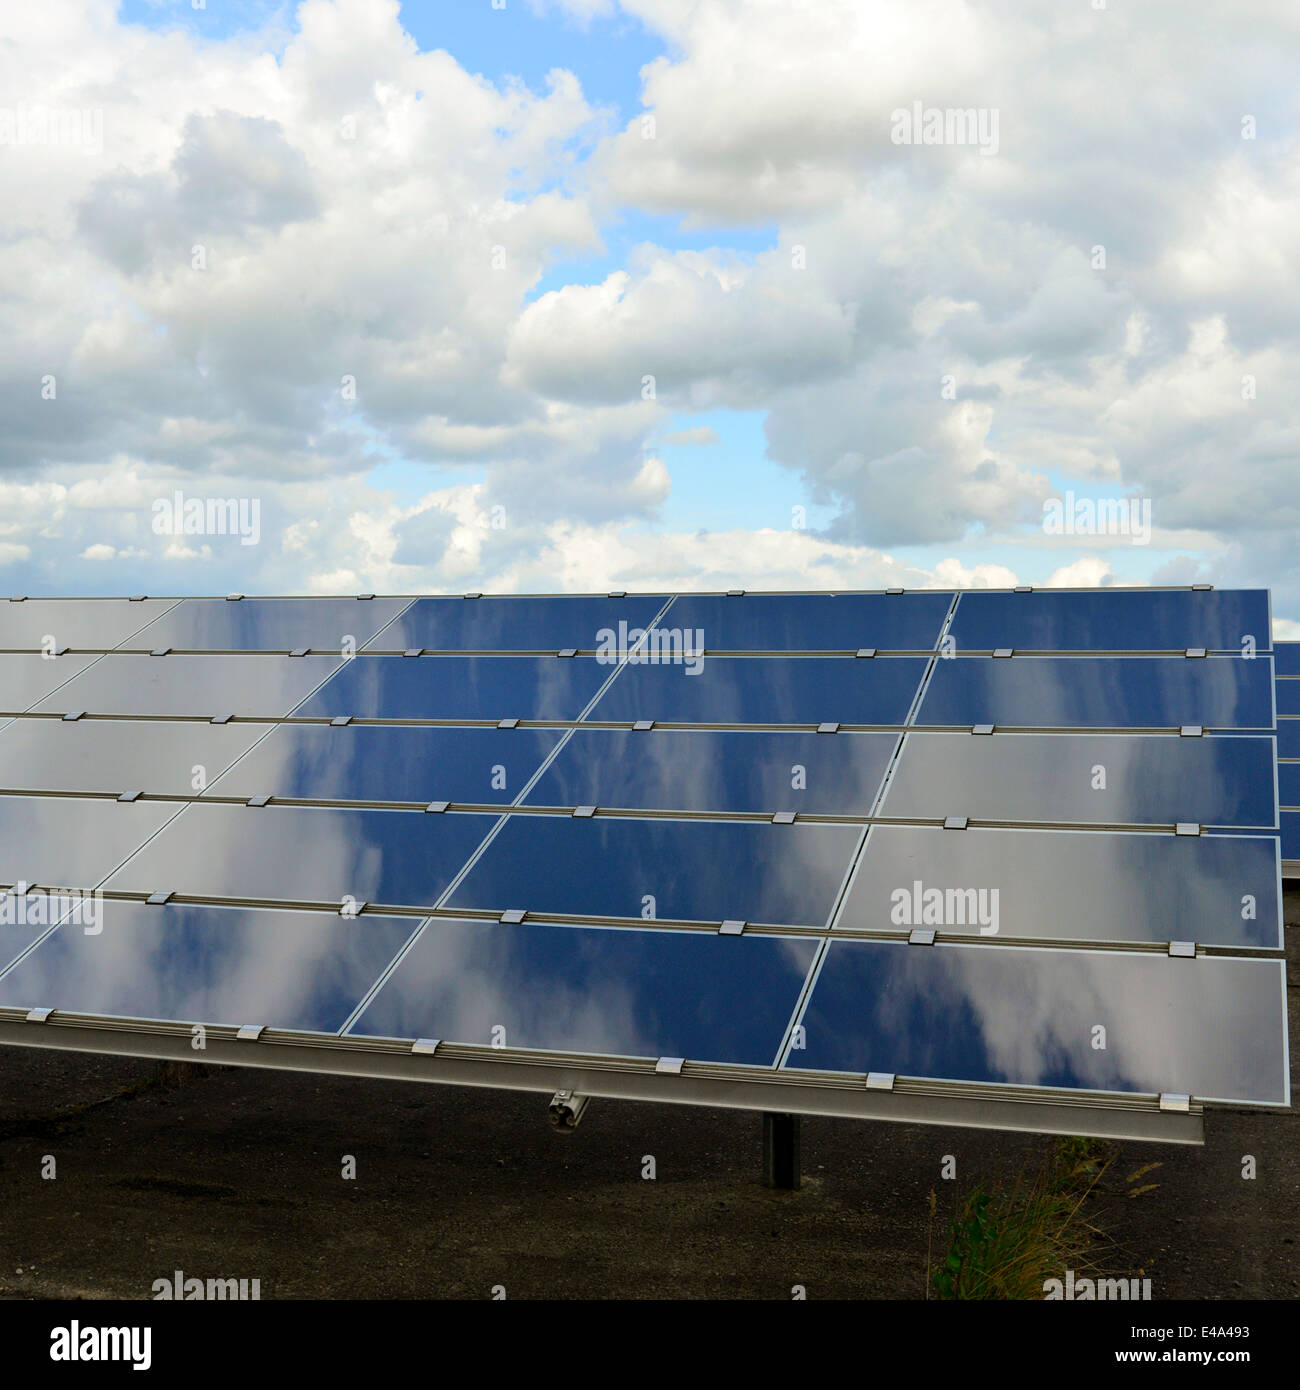 Germania, celle fotoelettriche della centrale solare con riflessi di nuvole, vista parziale Foto Stock